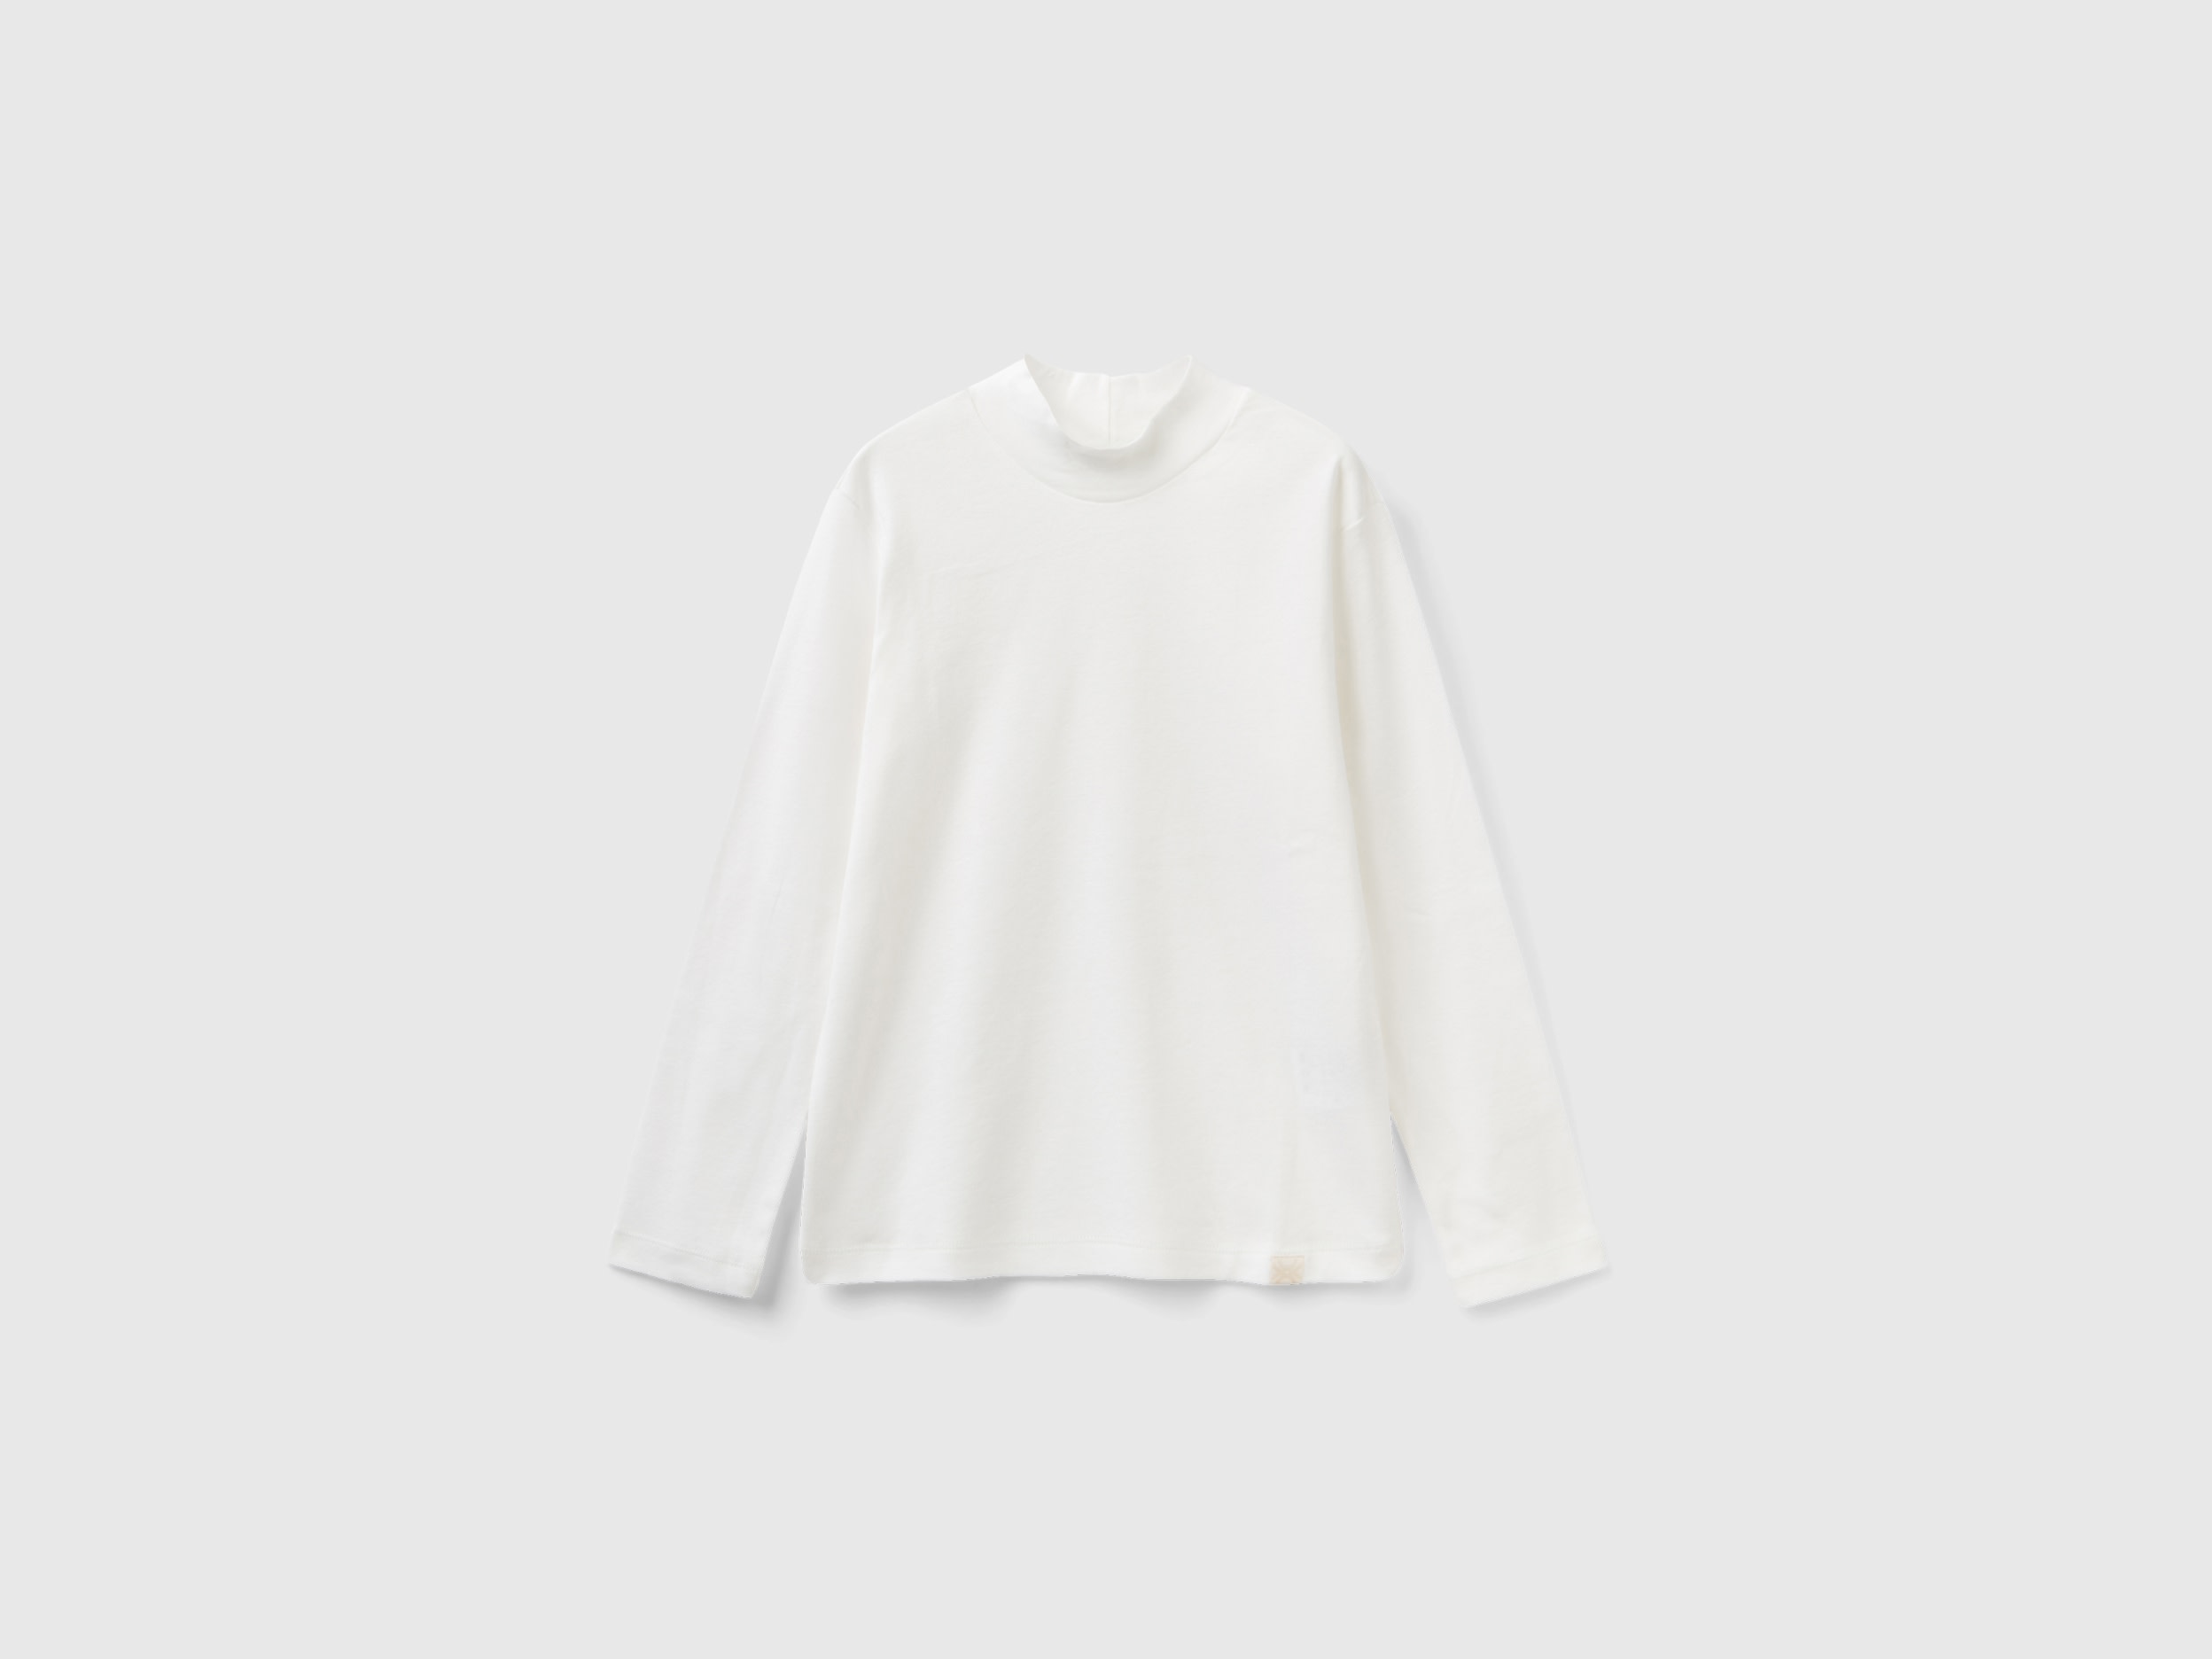 Benetton, Rubbed Knit Turtleneck T-shirt, size 2XL, White, Kids